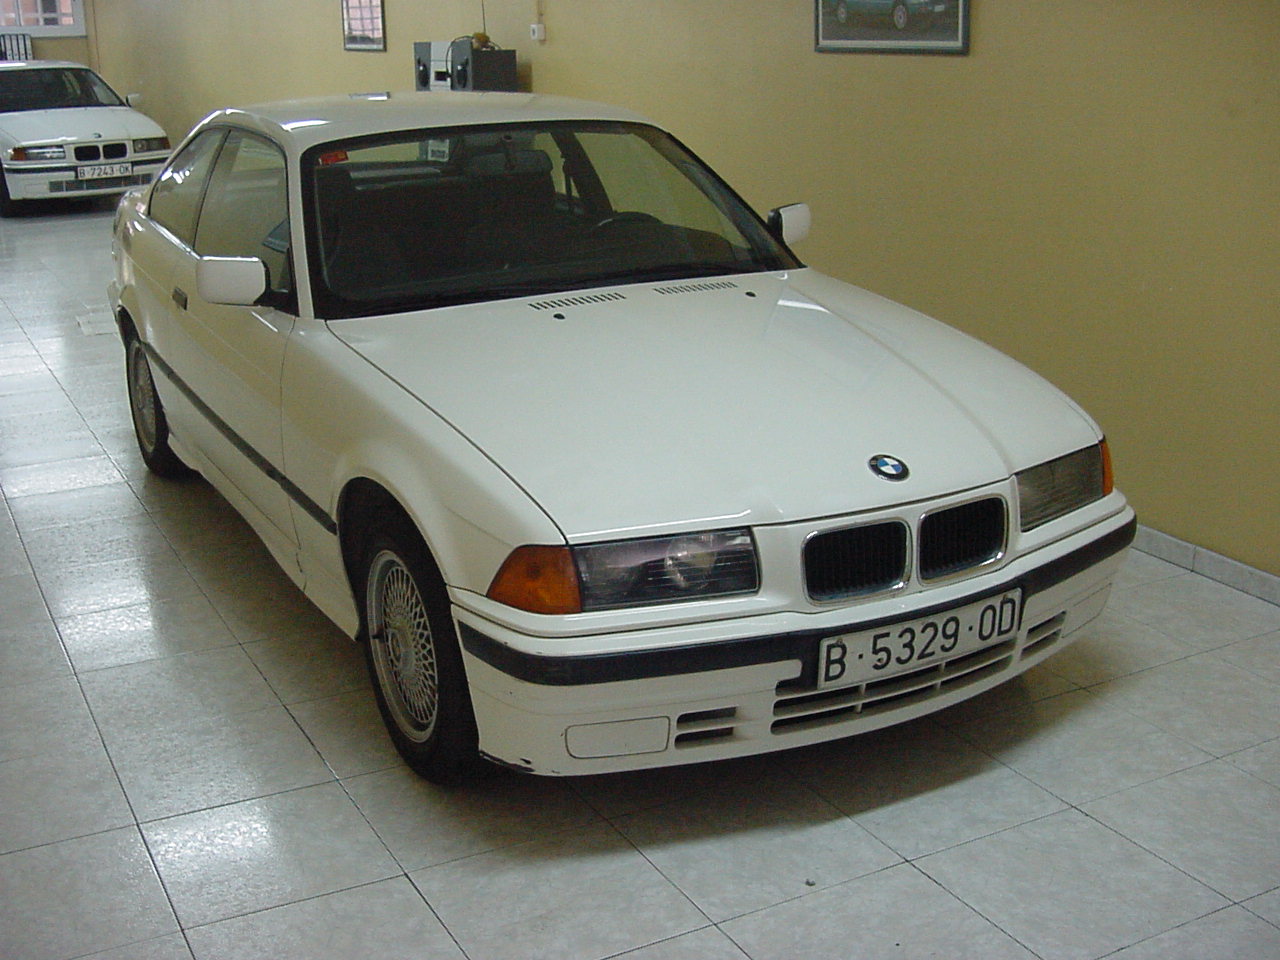 BMW usados usado ocasion segunda mano